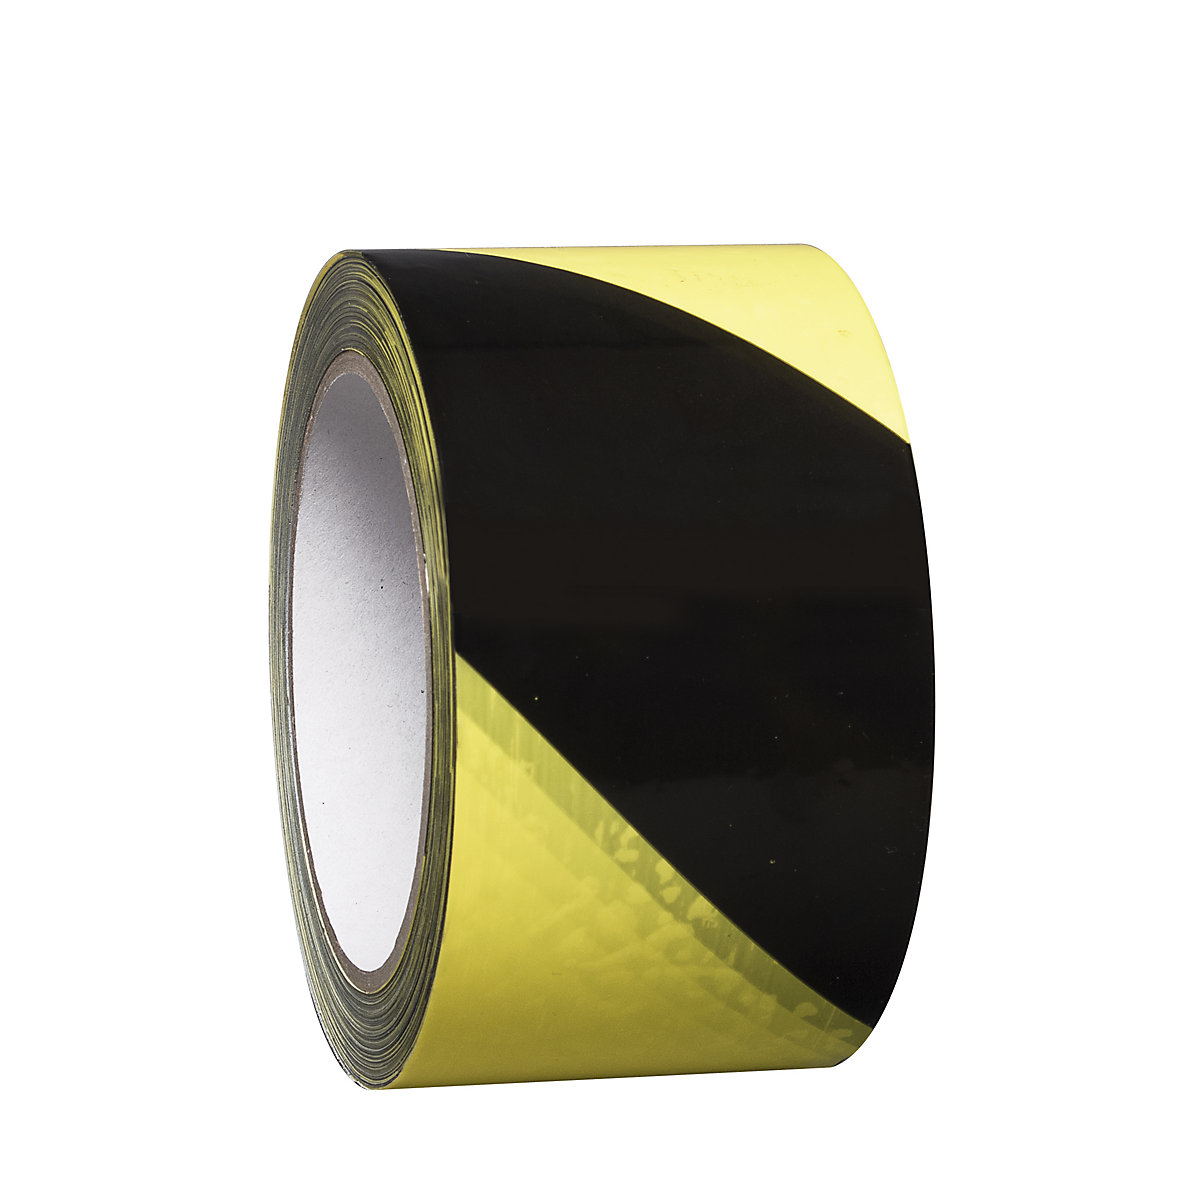 Podlahový značkovací pás z vinylu, dvoubarevný, šířka 75 mm, žlutá / černá, bal.j. 8 rolí-4